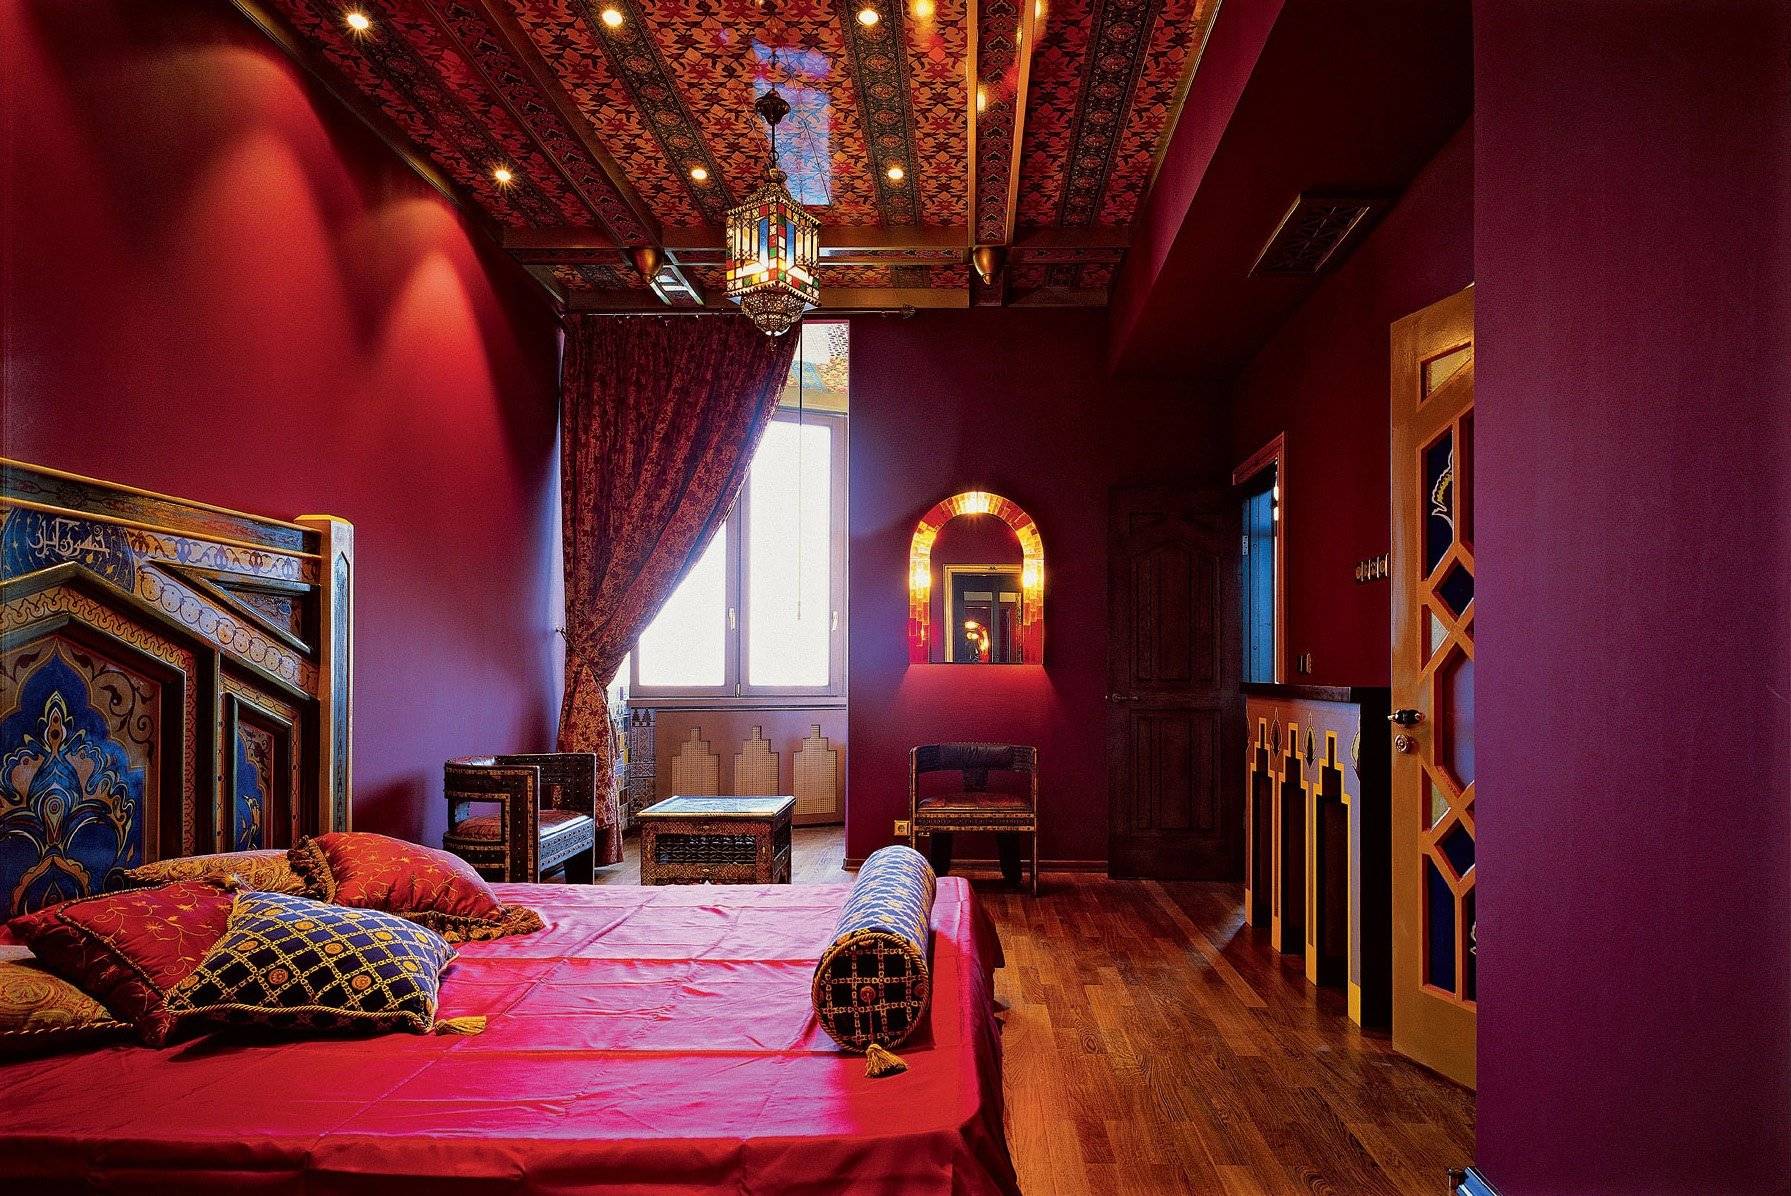 Дизайн спальни в восточном стиле: 20 красивых дизайн фото